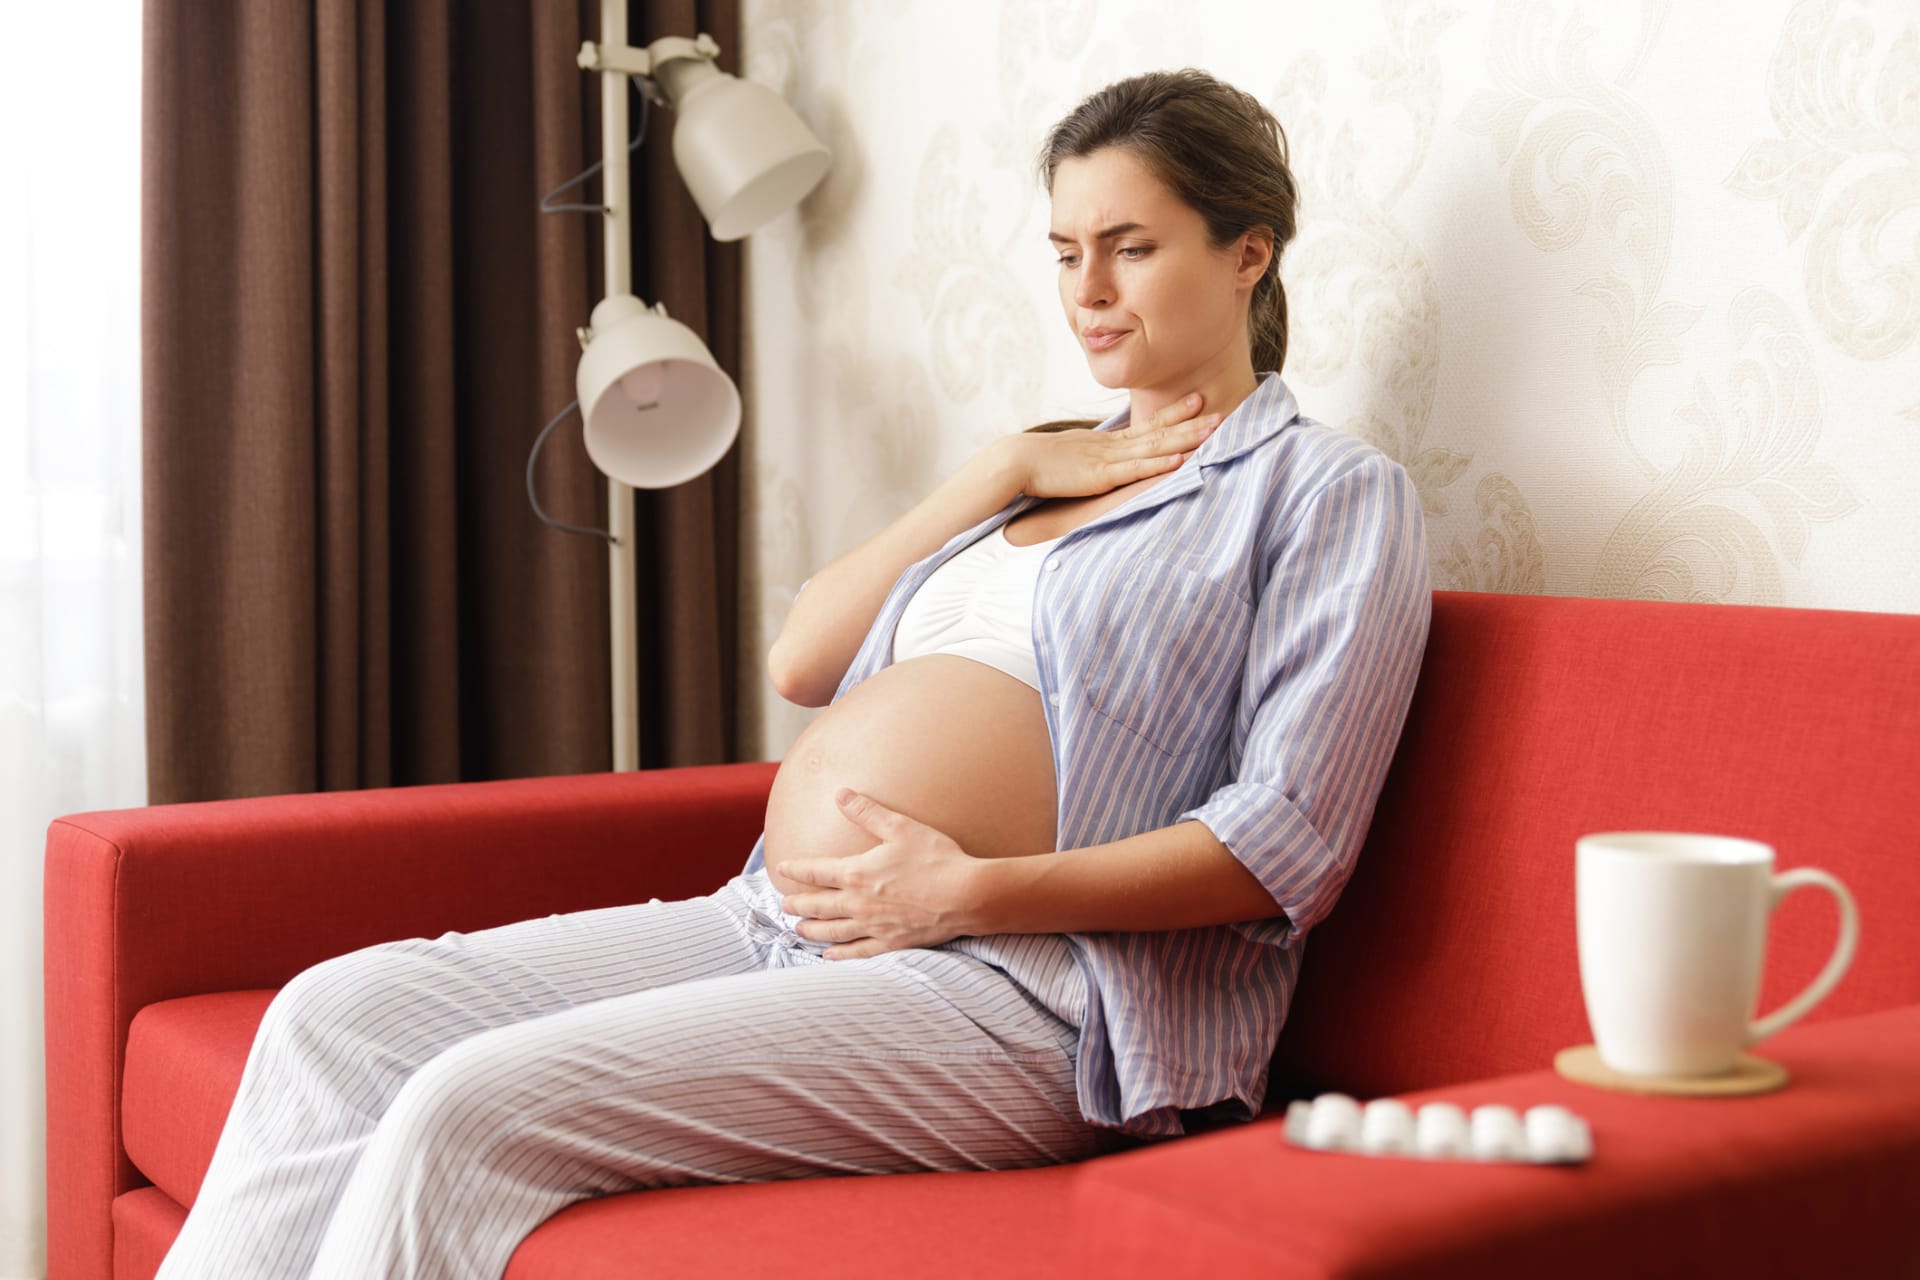 Ne všechny přírodní léky jsou vhodné v těhotenství. Vyloženě škodlivé a rizikové mohou být některé bylinky.